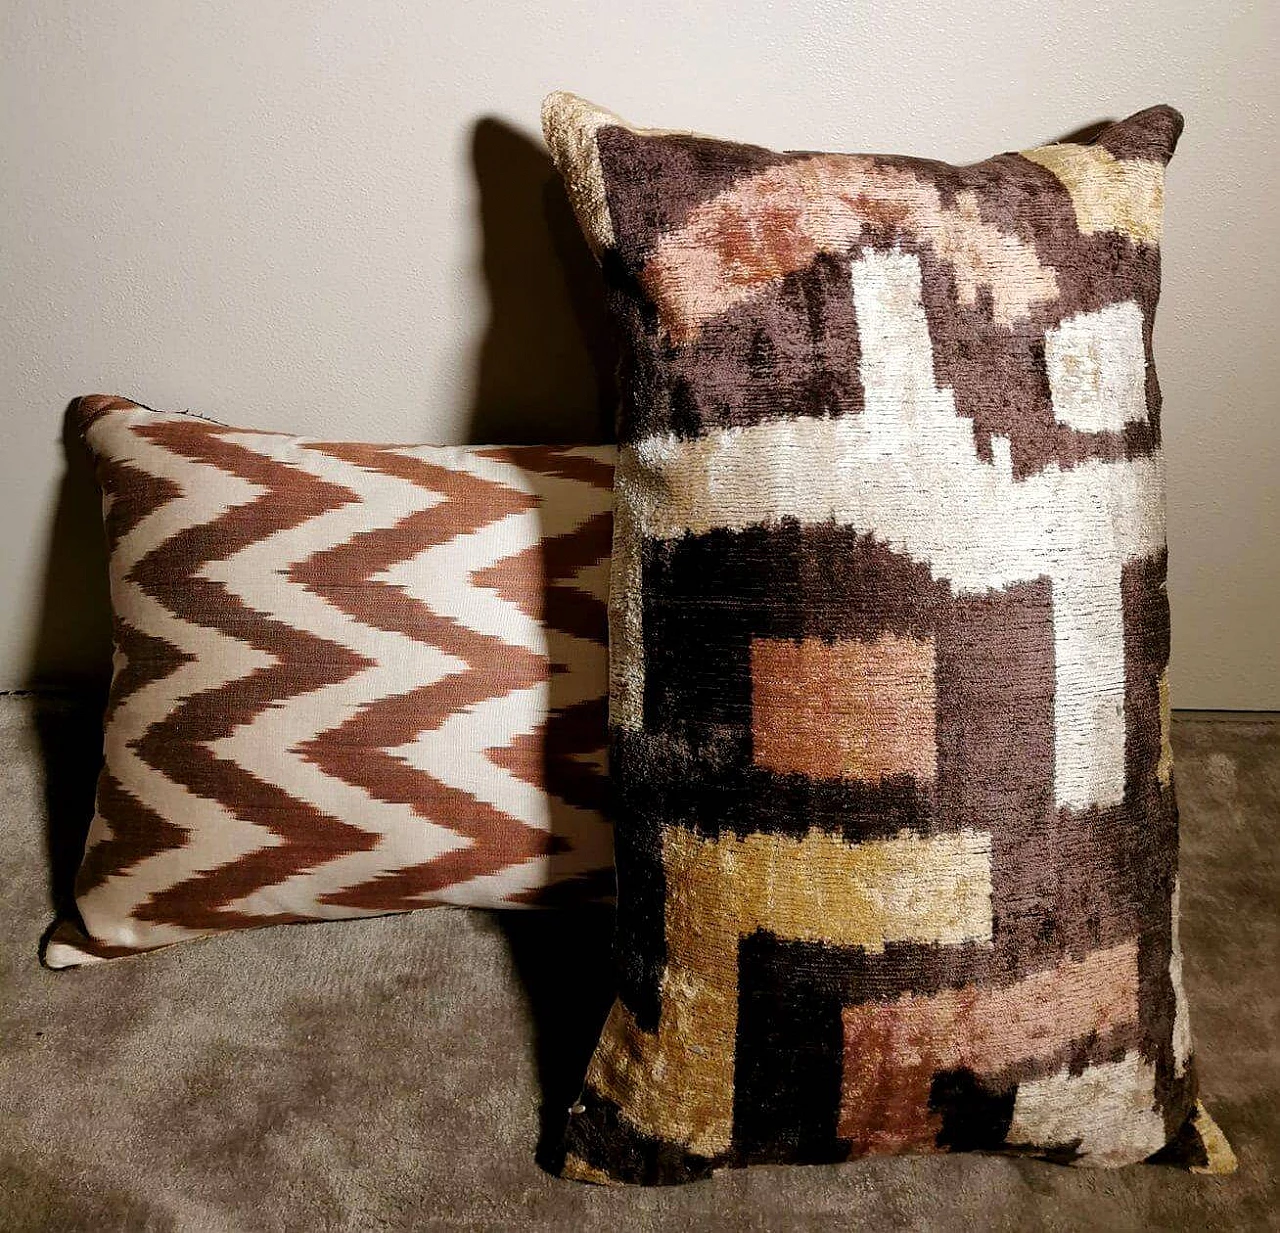 Pair of Ikat fabric cushions handmade in Uzbekistan 1464139